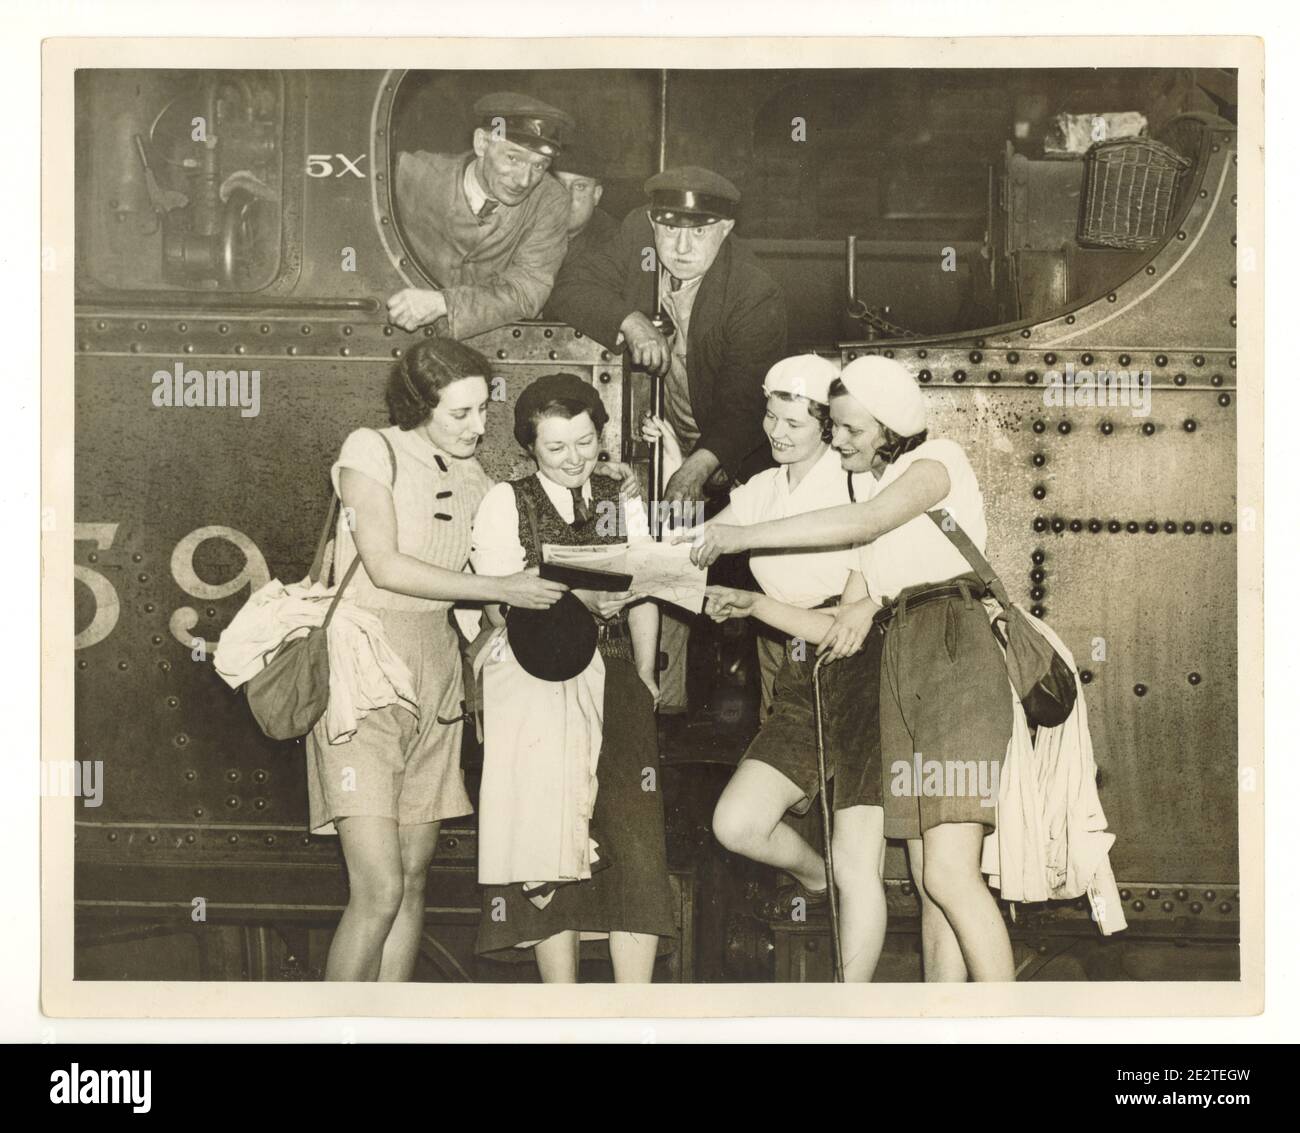 Photo de presse de l'époque de la Seconde Guerre mondiale de jeunes marchettes joyeuses lisant une carte à la plate-forme de la gare, à côté d'une machine à vapeur, les conducteurs de train regardent, Londres, Royaume-Uni, années 1940 Banque D'Images